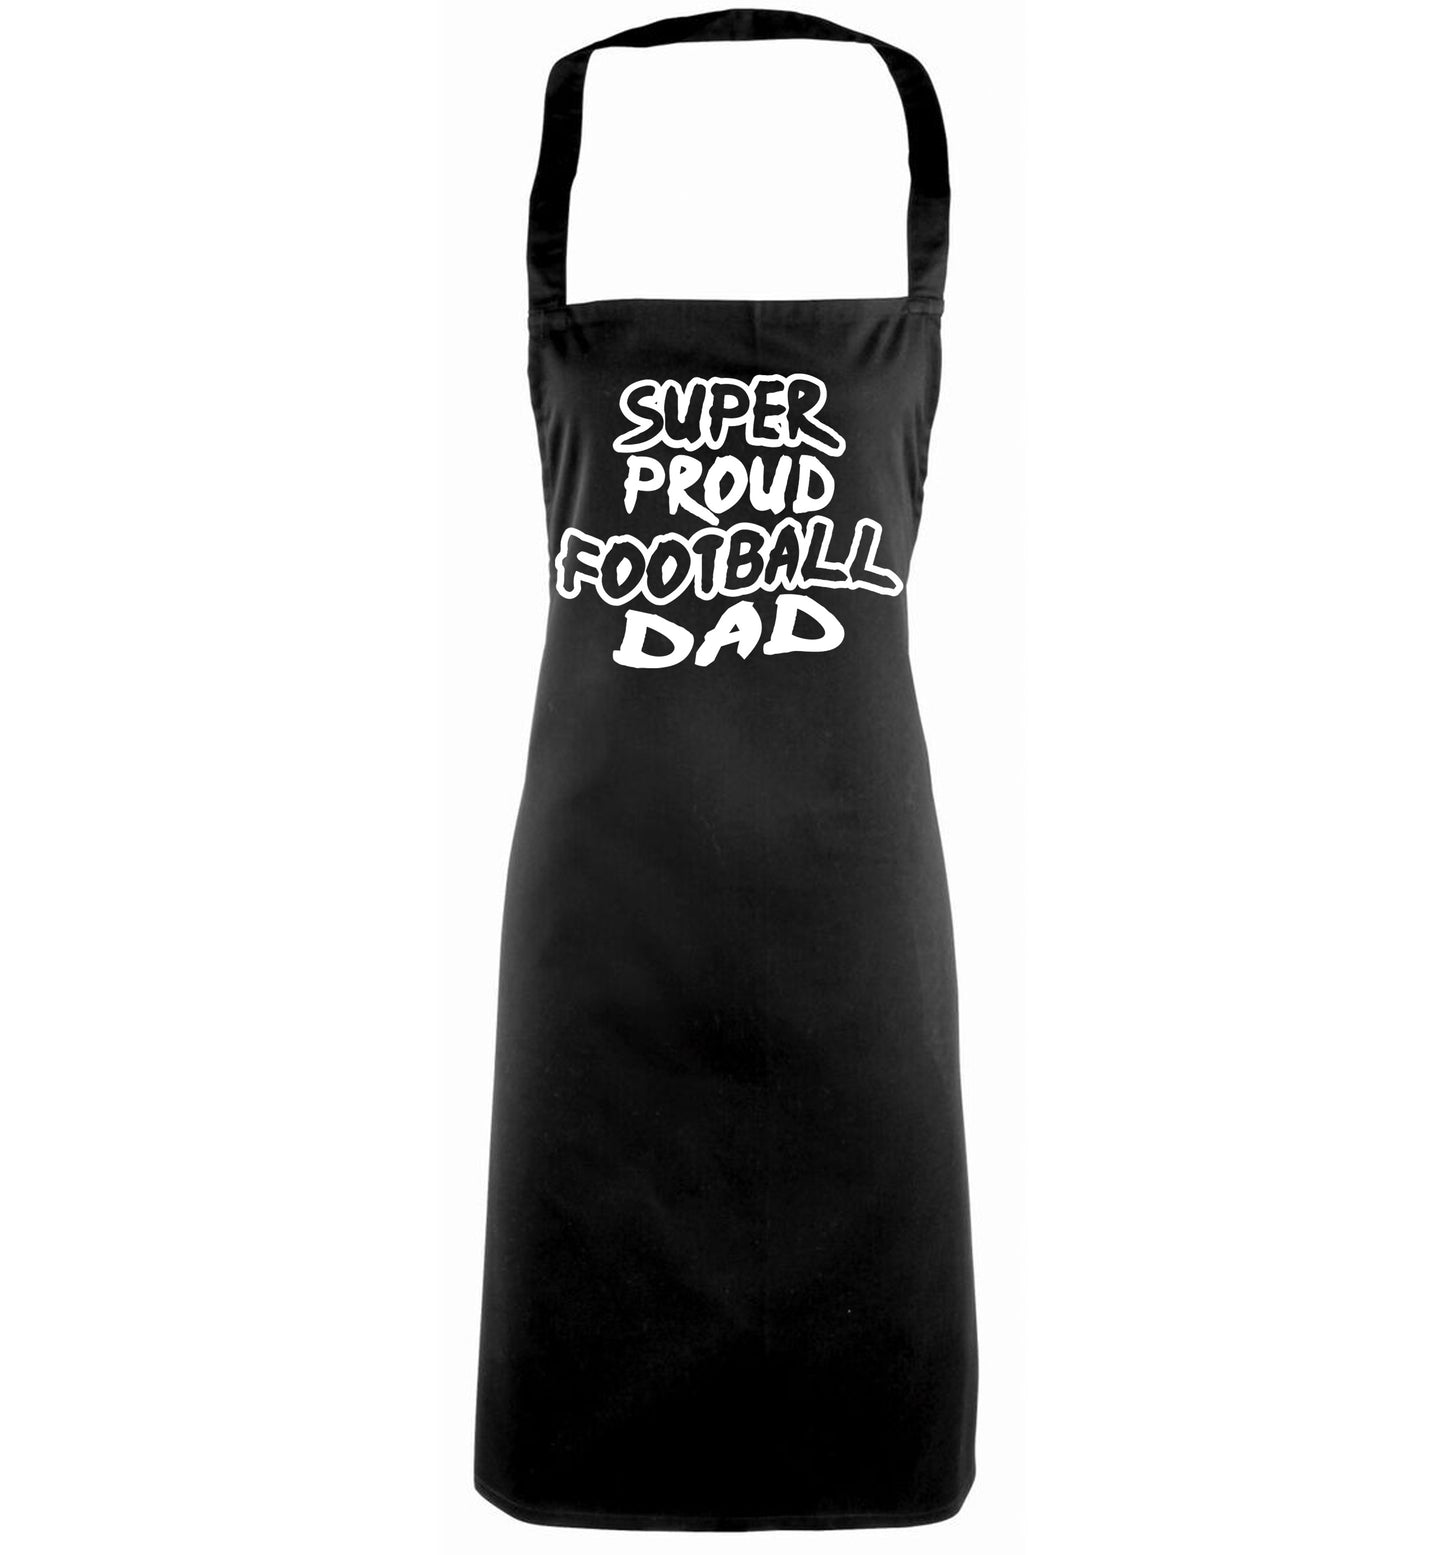 Super proud football dad black apron